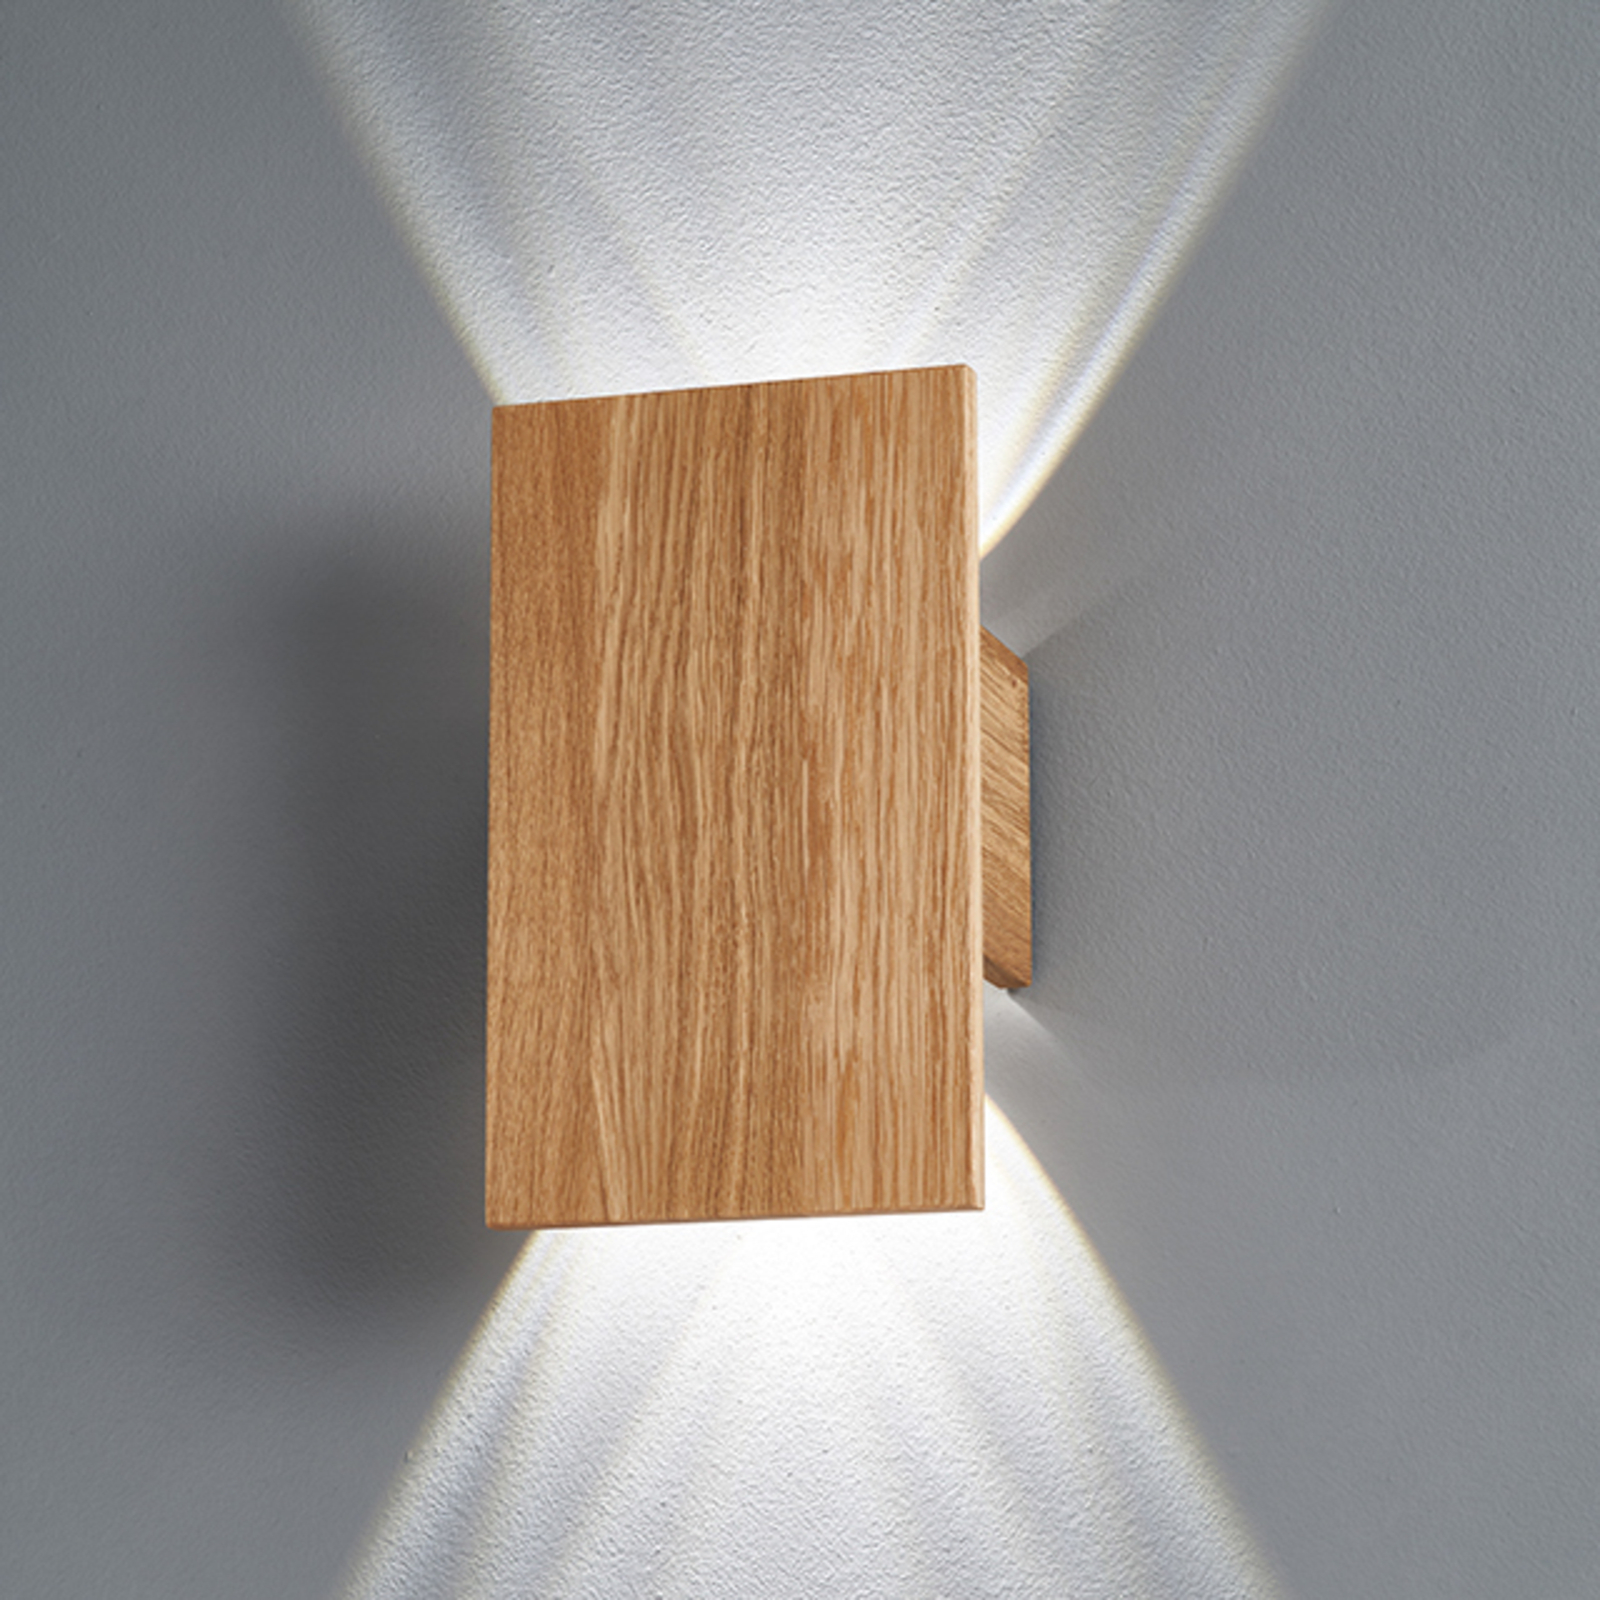 LED nástěnné světlo Shine-Wood dub 4xLED 15x25cm